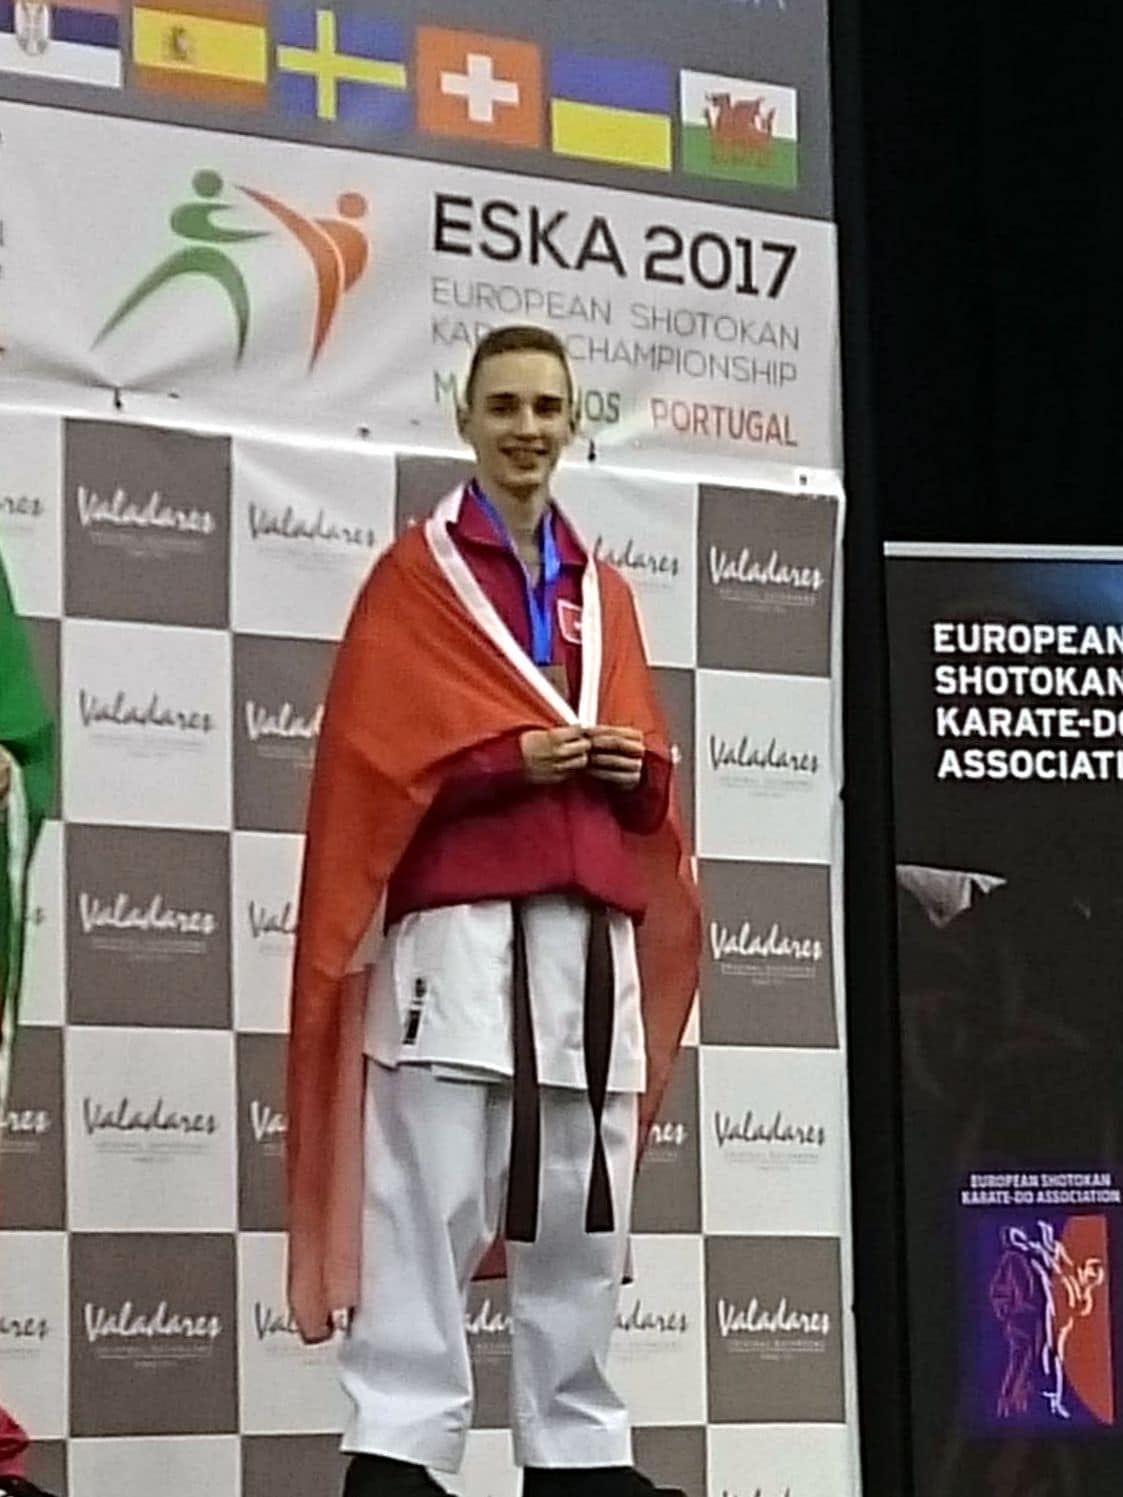 Karatekai Basel - Erfolg am ESKA Shotokan Europa-Cup 2017 in Porto